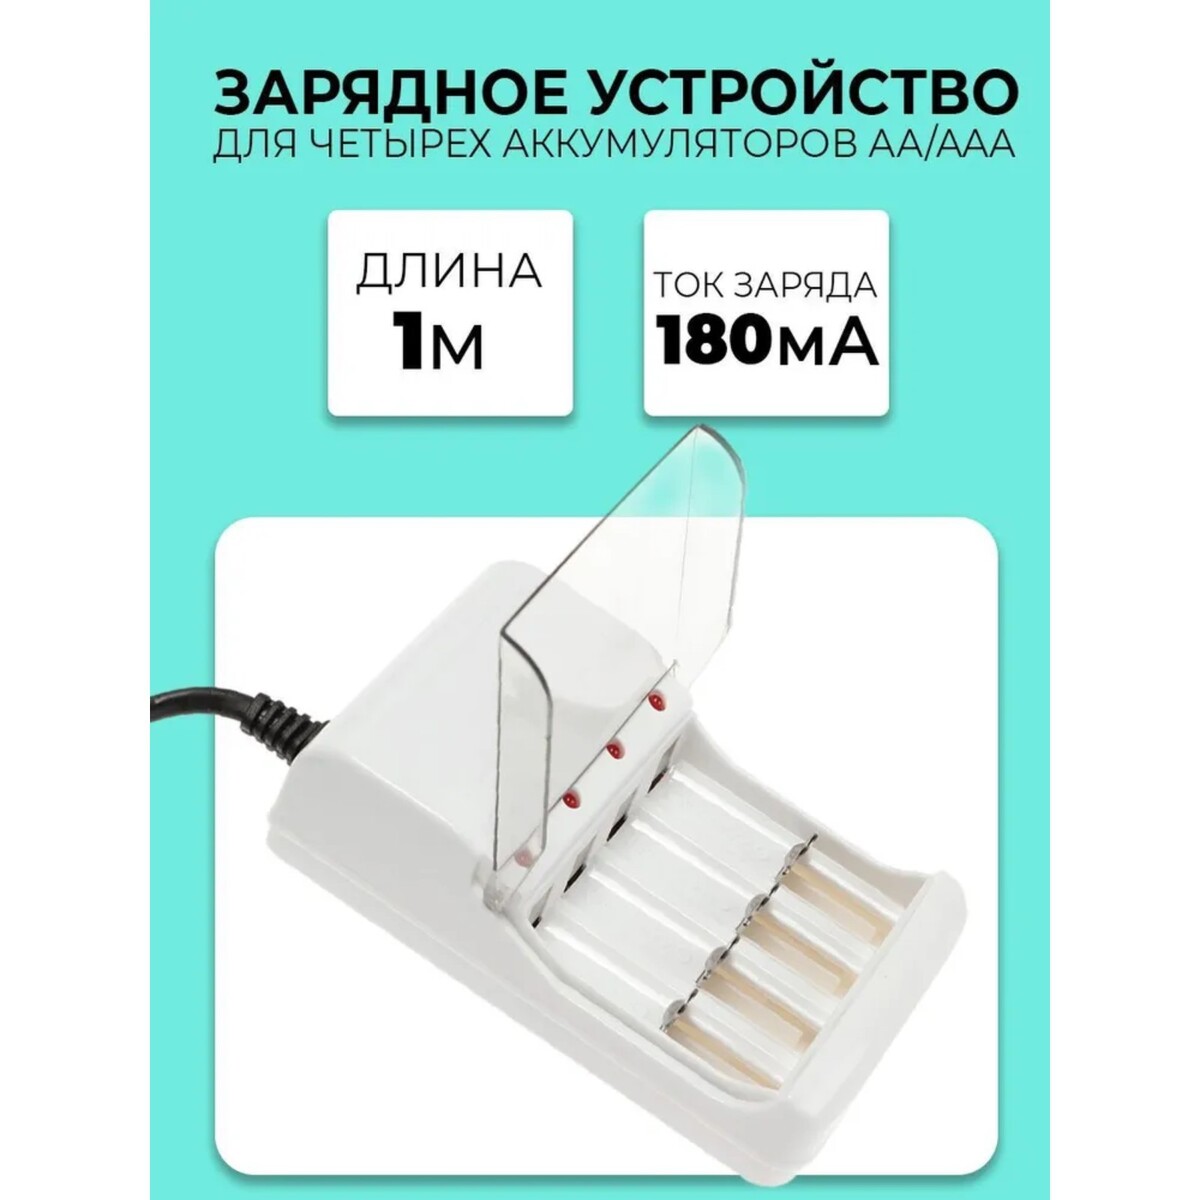 Зарядное устройство для четырех аккумуляторов аа или ааа chr-56, 1 м,ток заряда 180 ма,белое зарядное устройство для четырех аккумуляторов аа или ааа chr 56 1 м ток заряда 180 ма белое